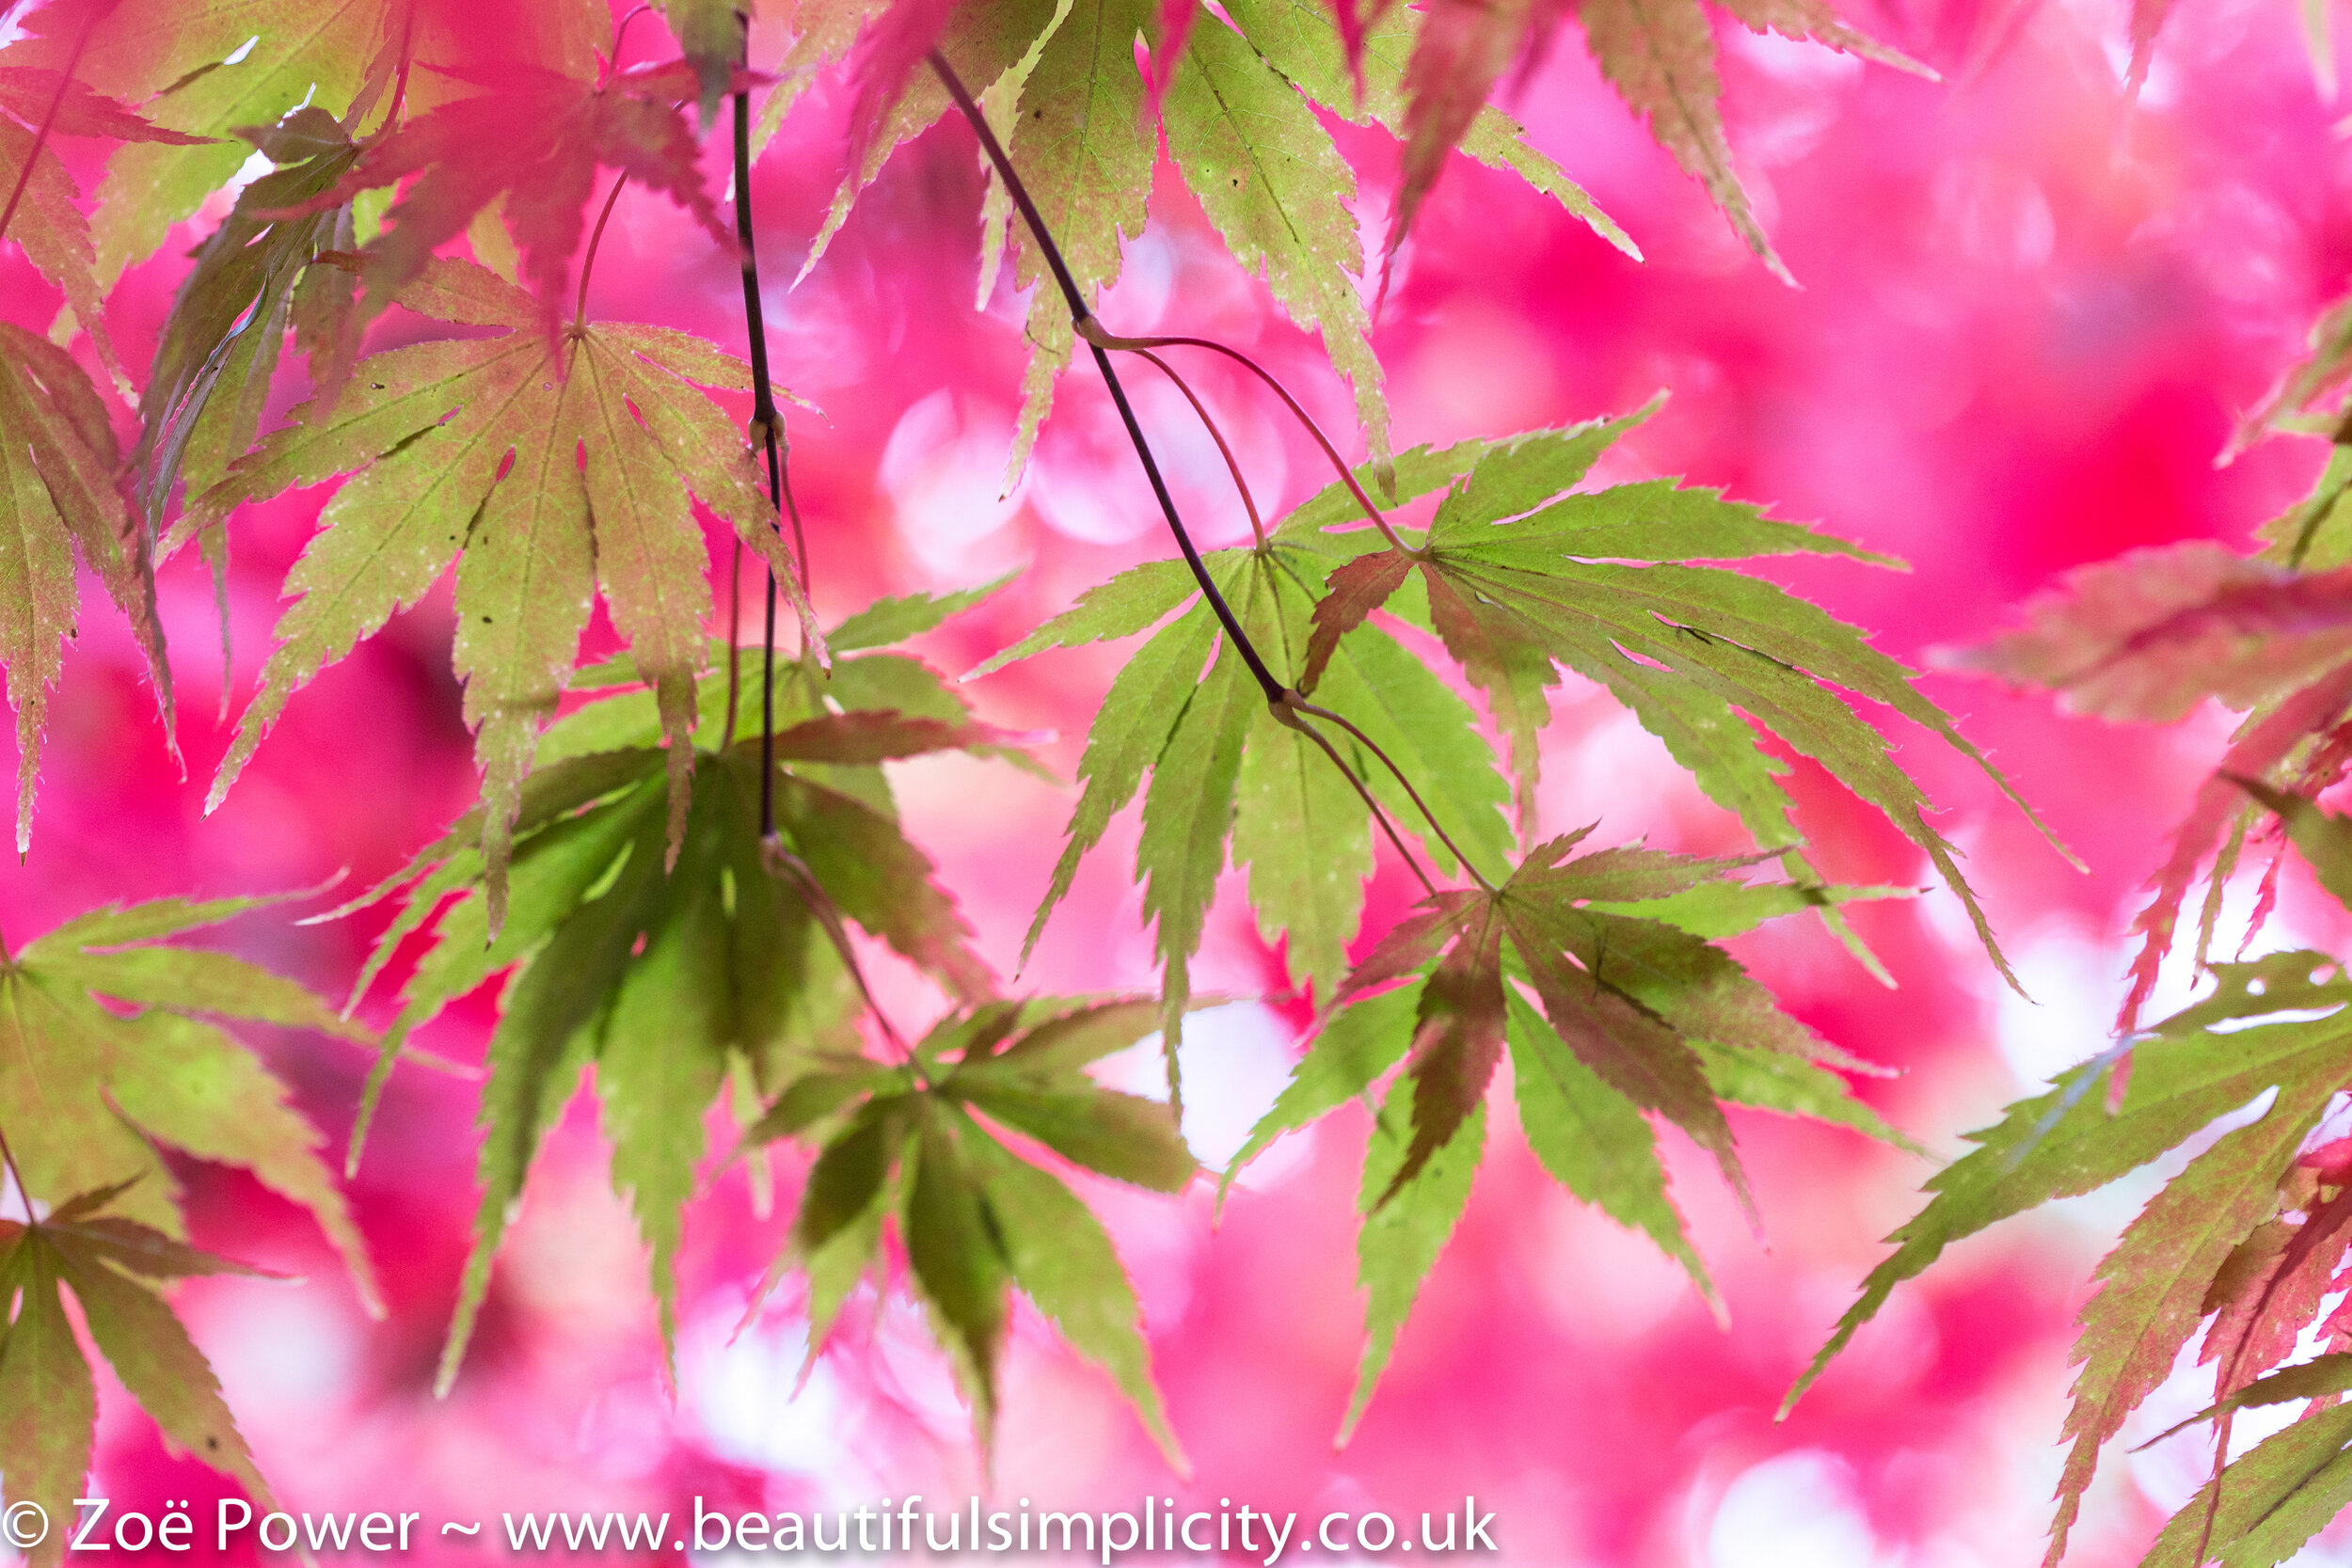 Autumn colour at Westonbirt Arboretum by Zoë Power | Beautiful Simplicity